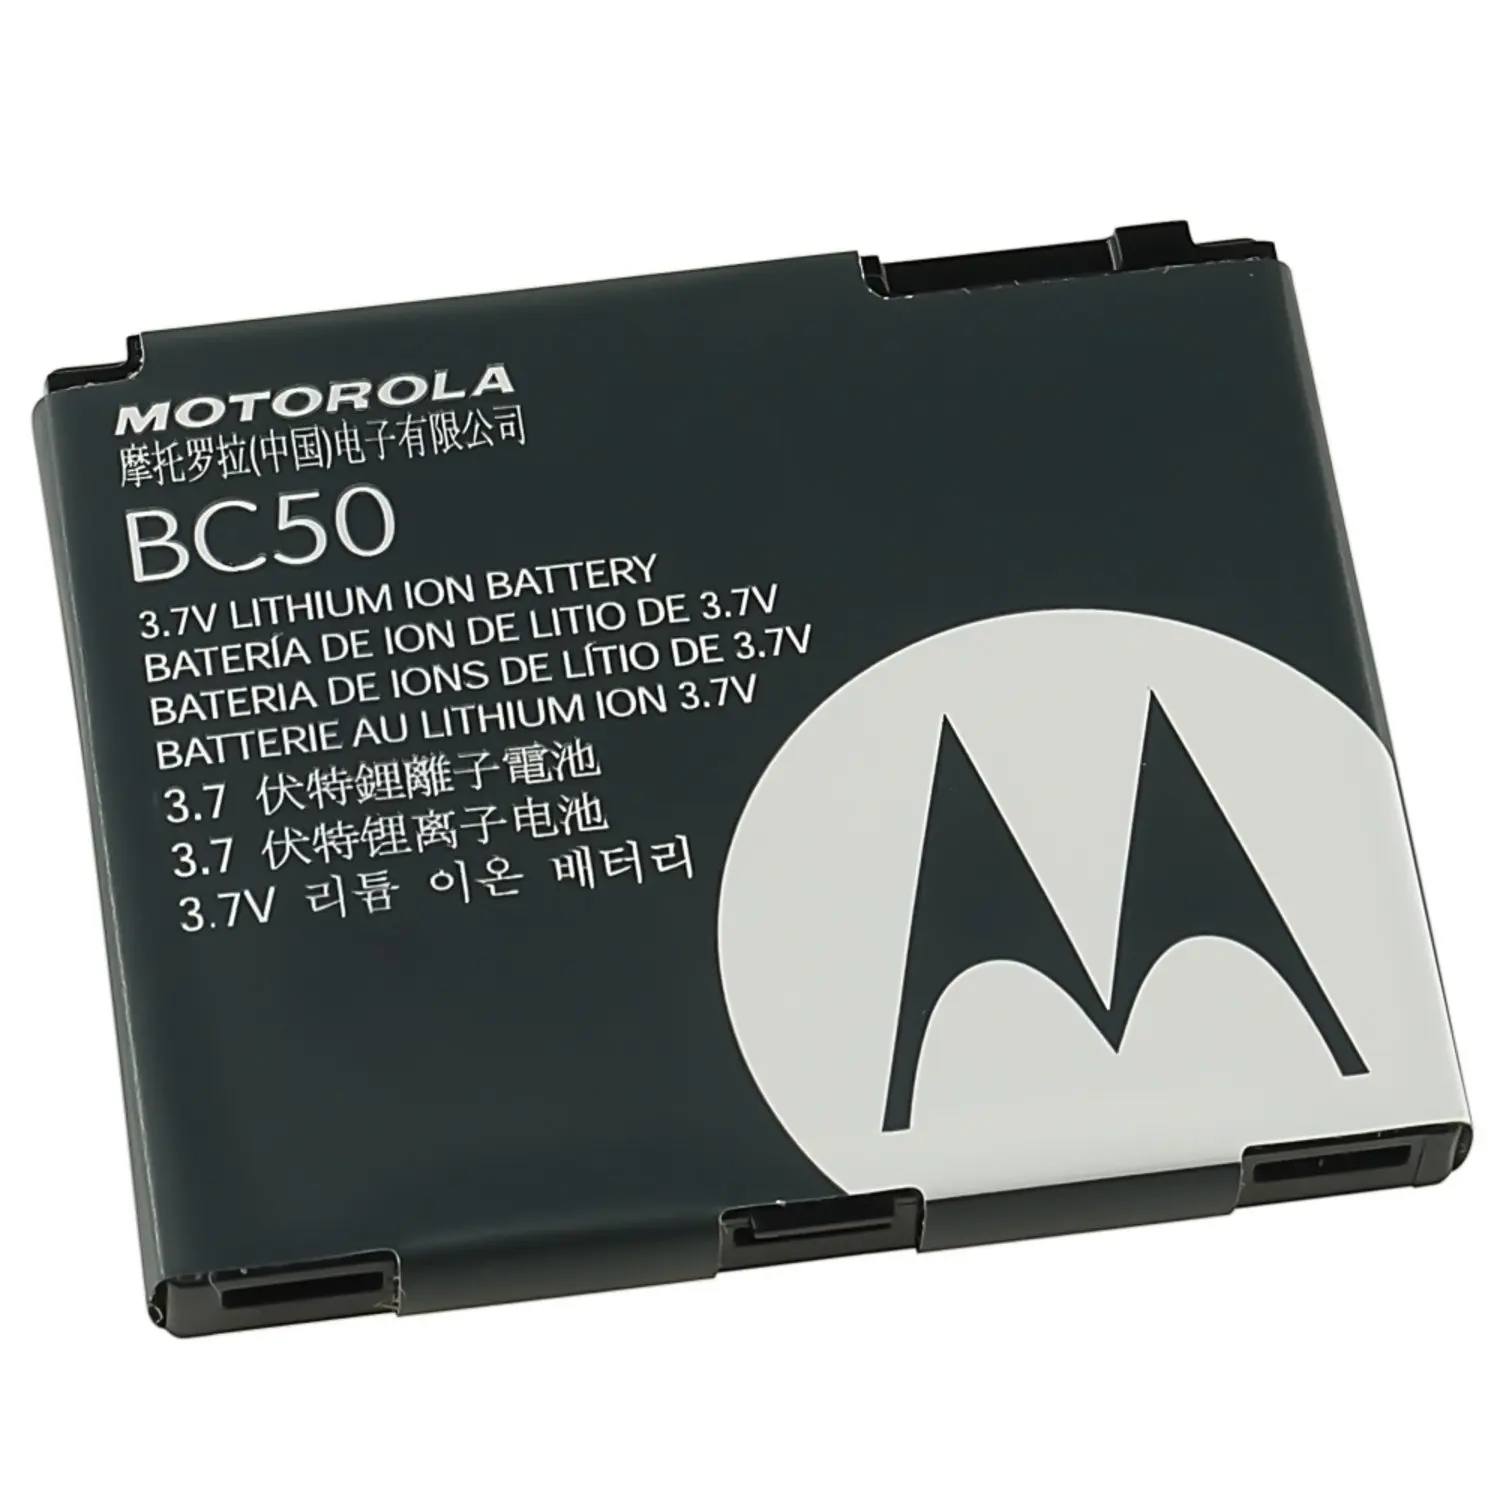 Battery 50. Motorola bc50 Battery. Motorola l6 l7. Motorola k1 аккумулятор. Motorola l6 аккумулятор.